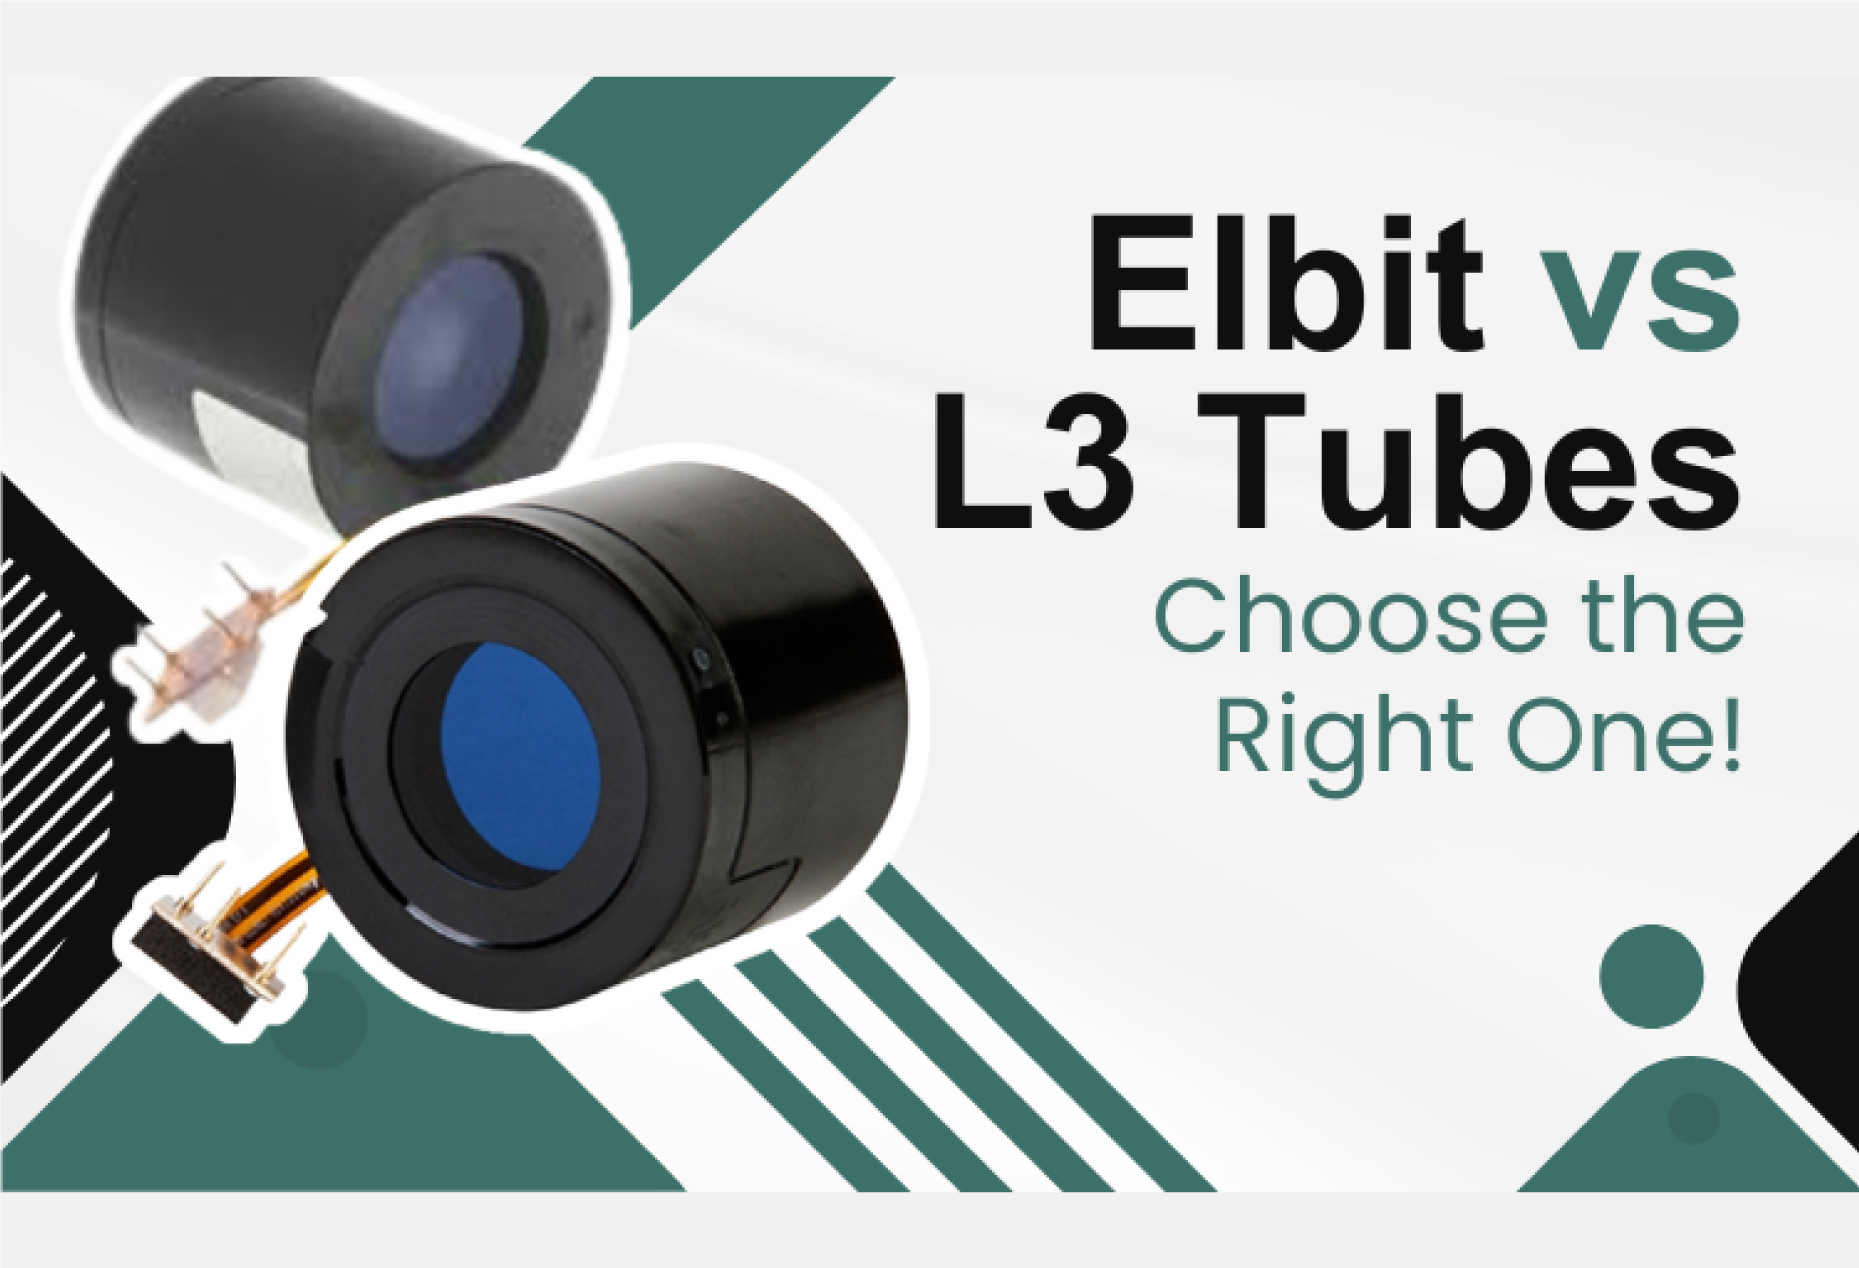 Elbit vs L3 Tubes